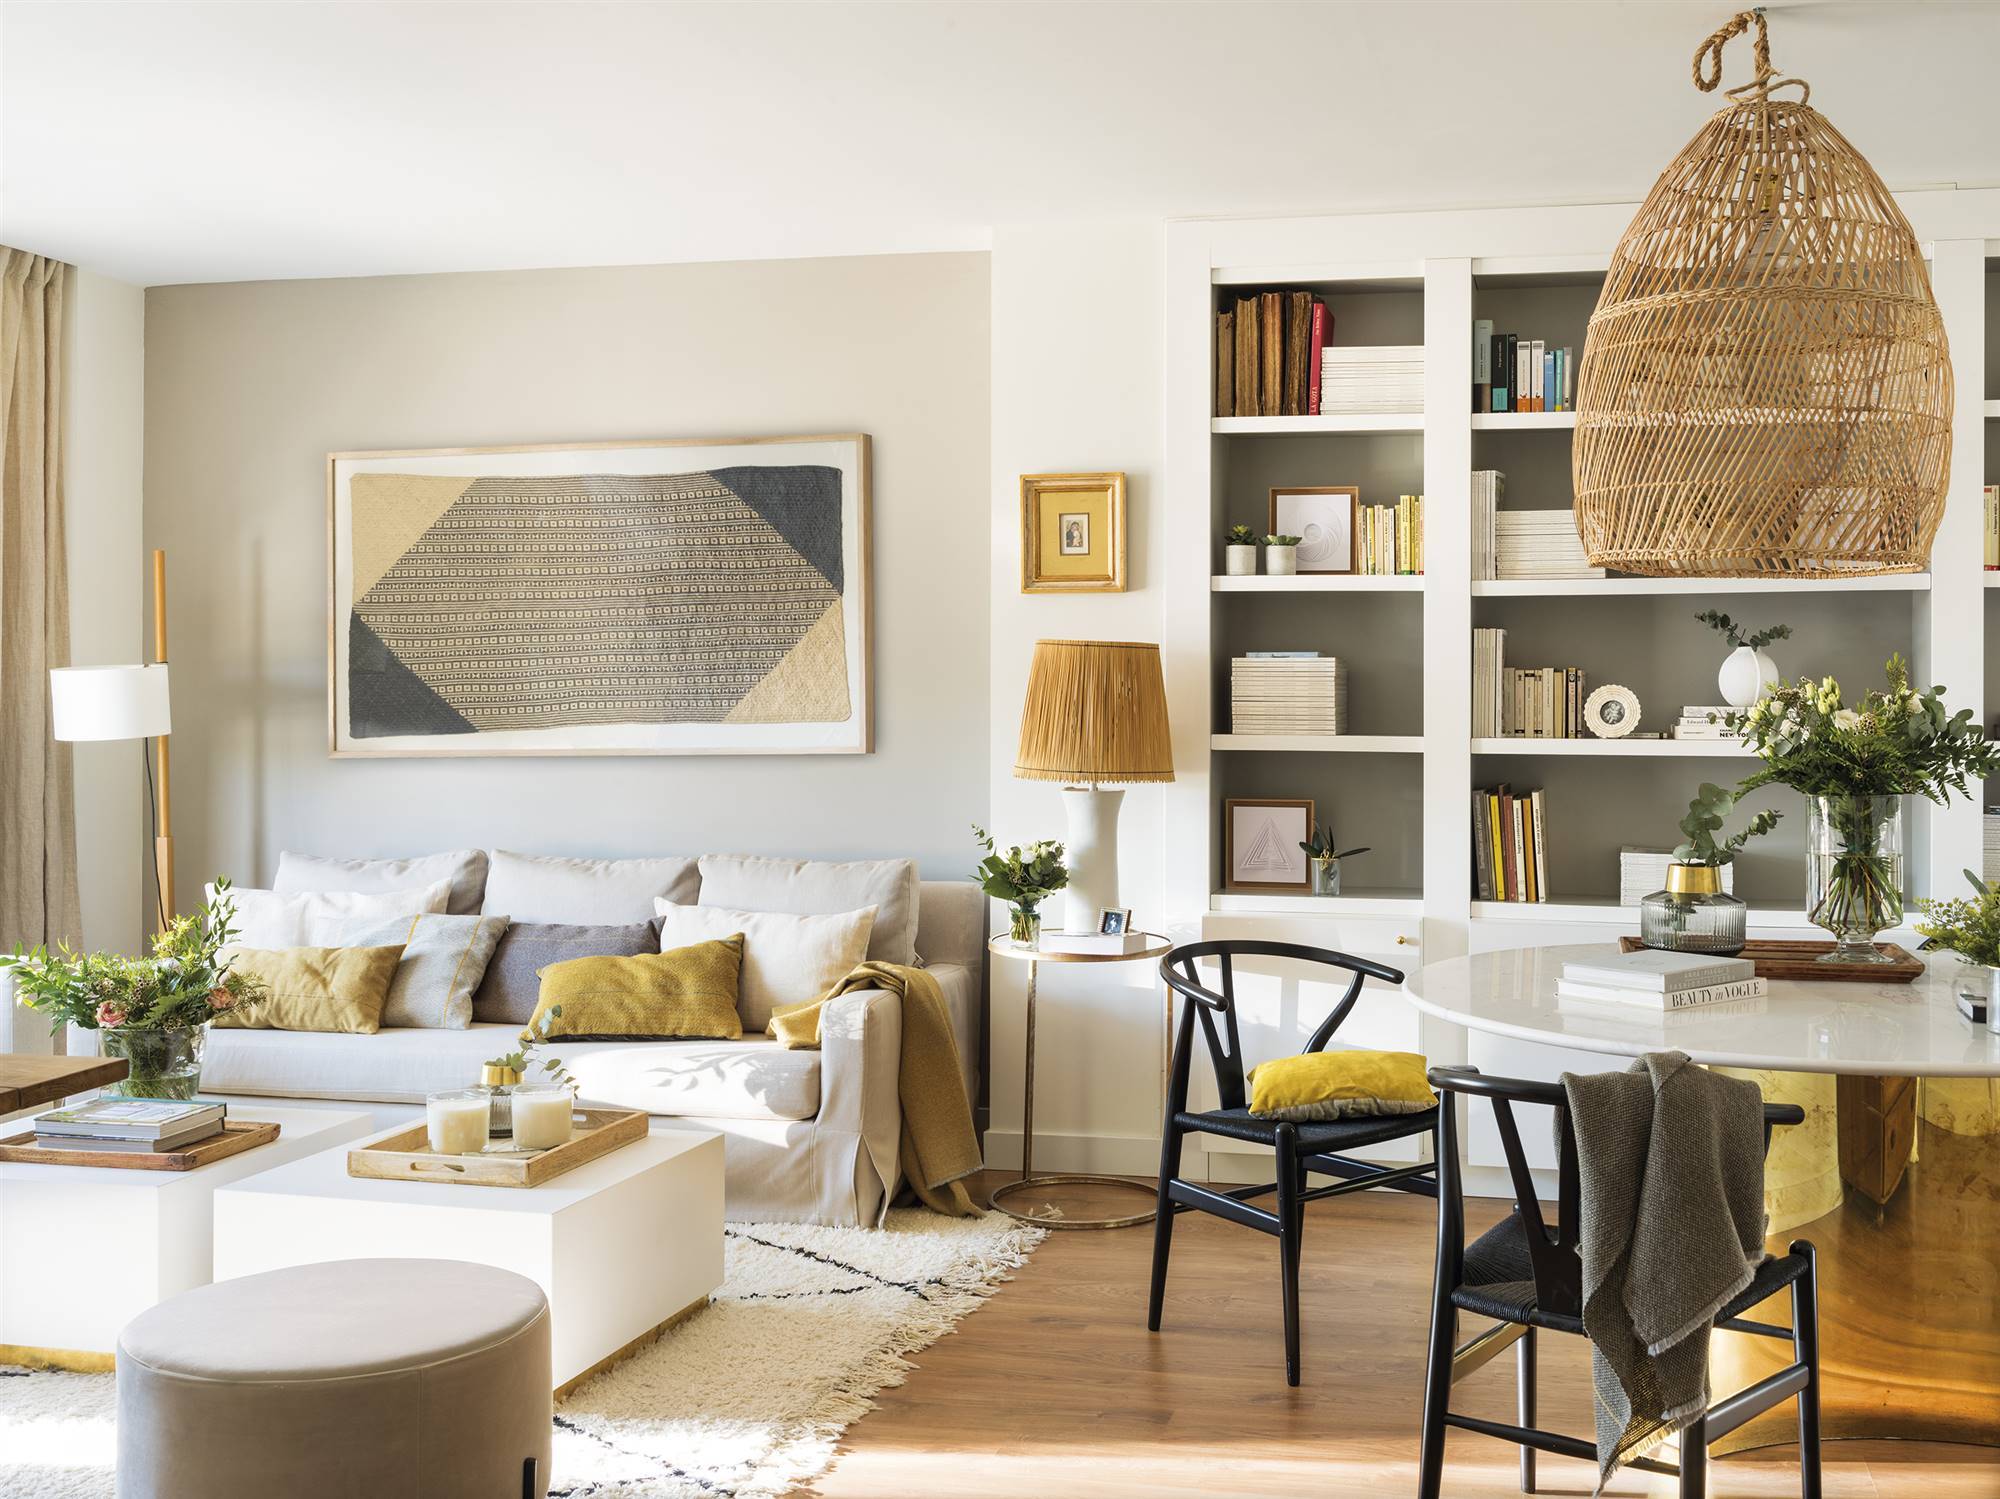 Salón con sofá blanco, comedor moderno, librería y toques de color mostaza.